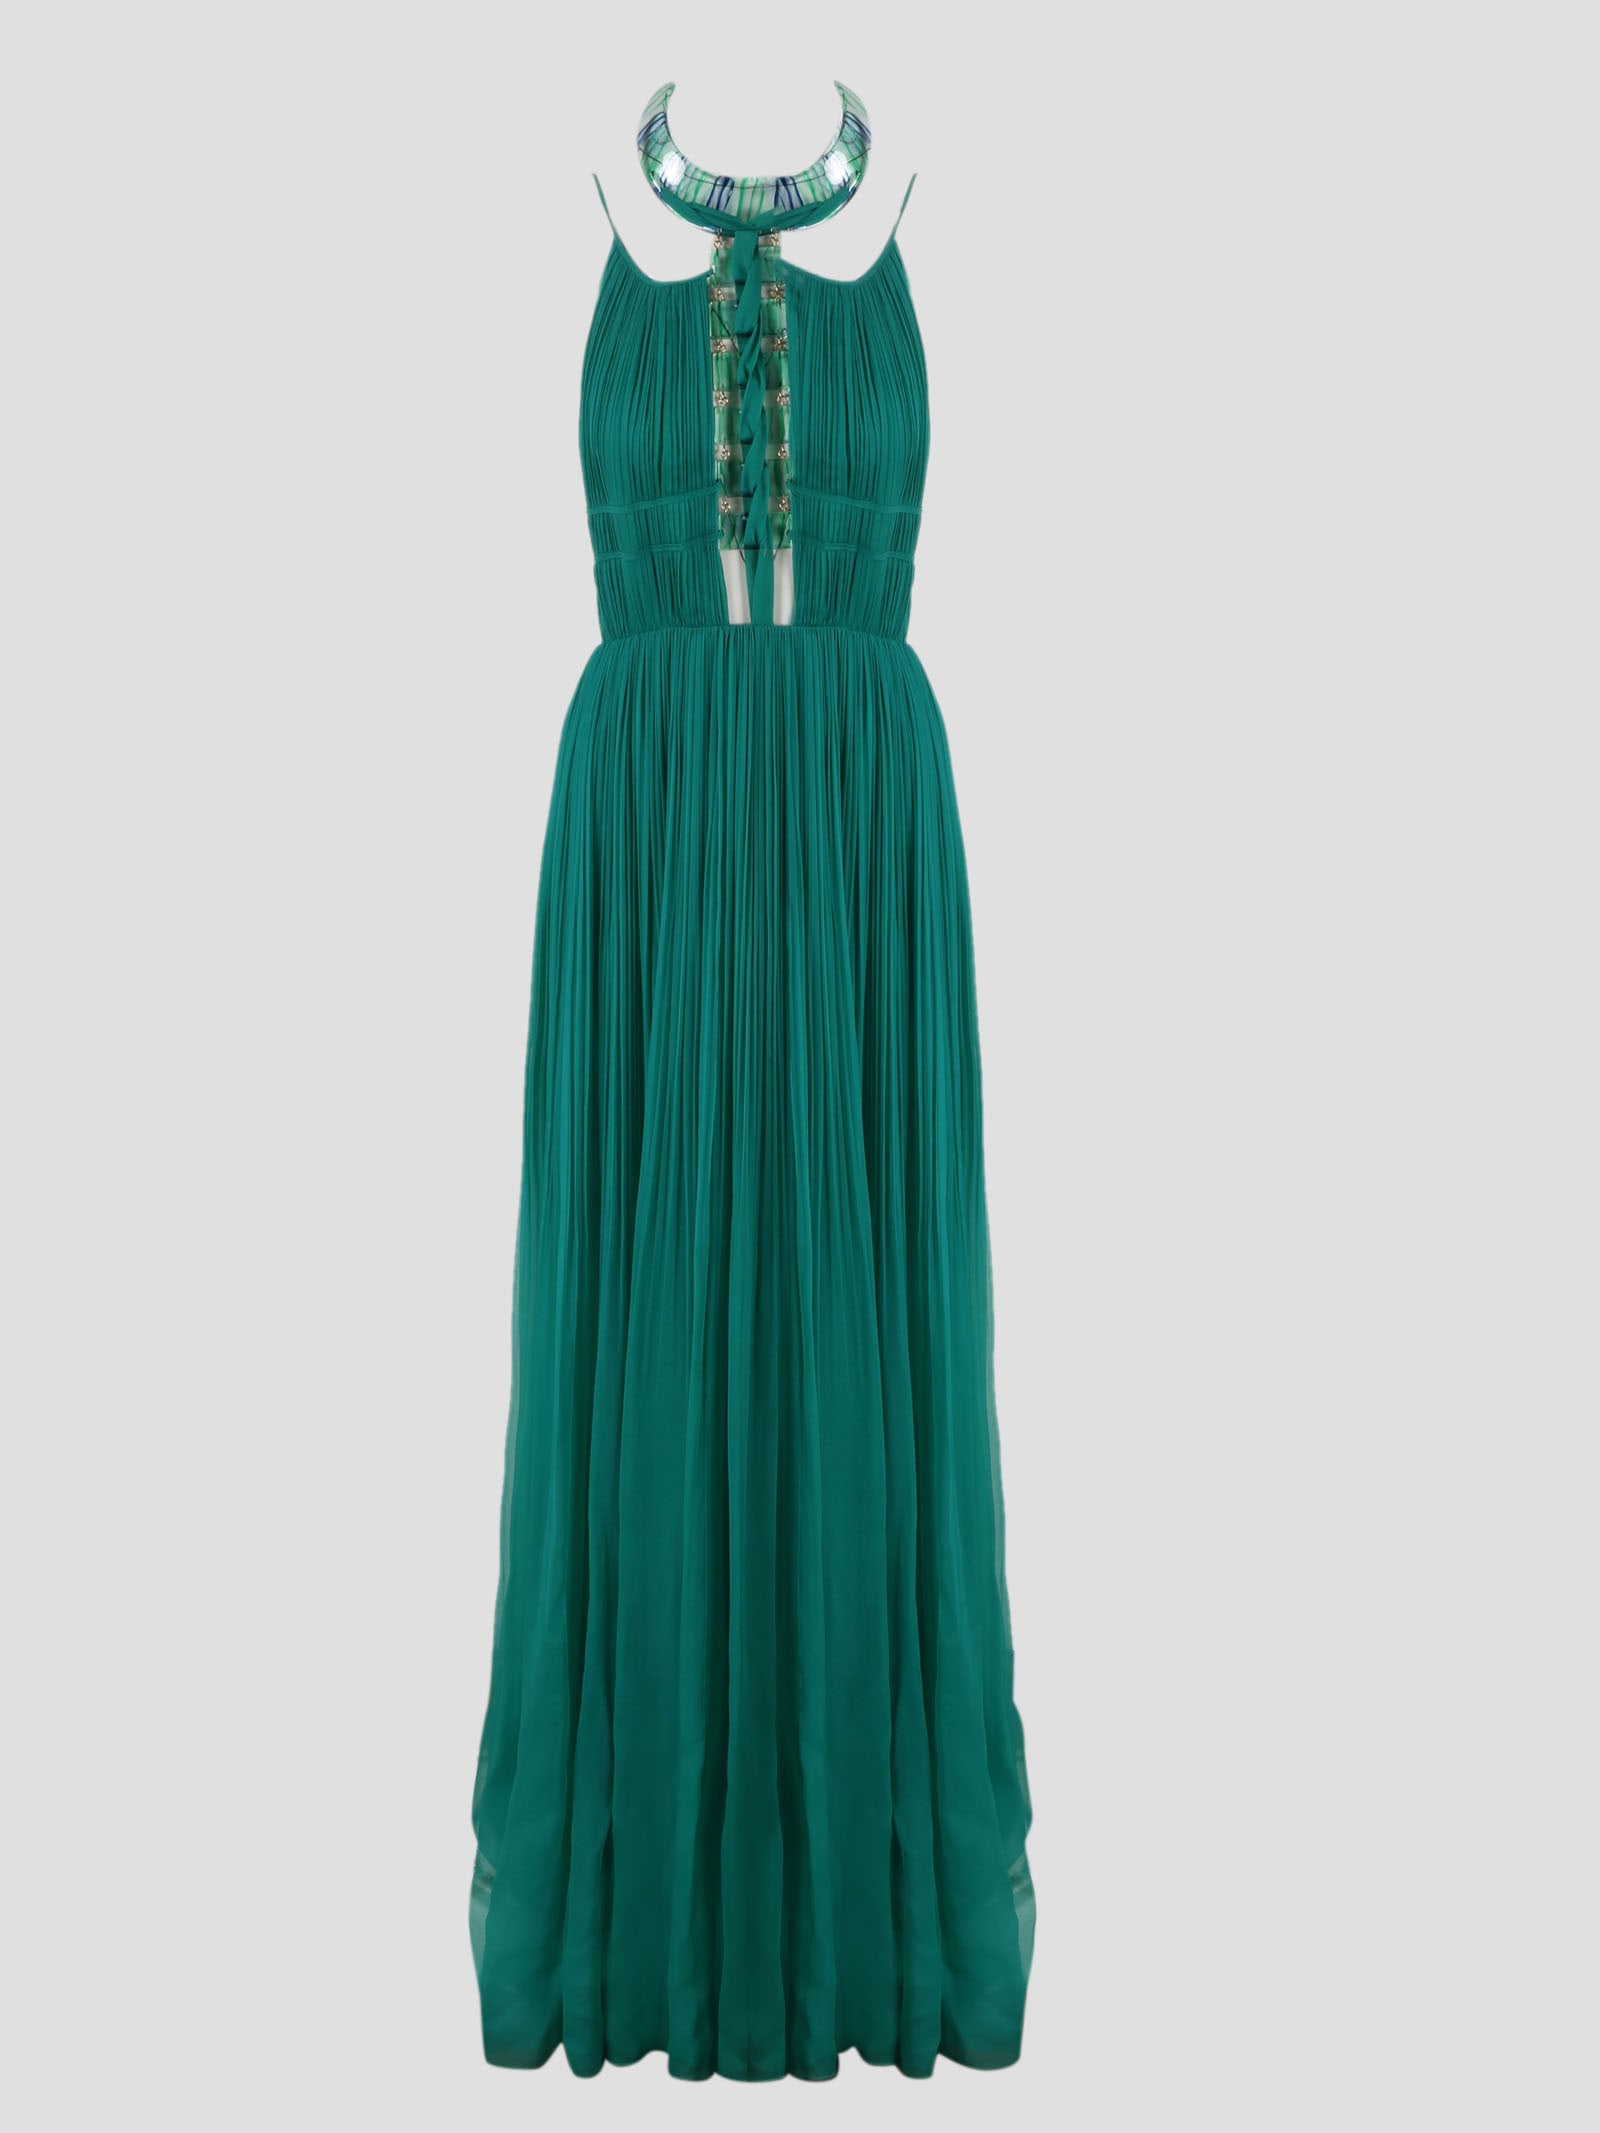 Alberta Ferretti Chiffon Long Dress With Jewel Details